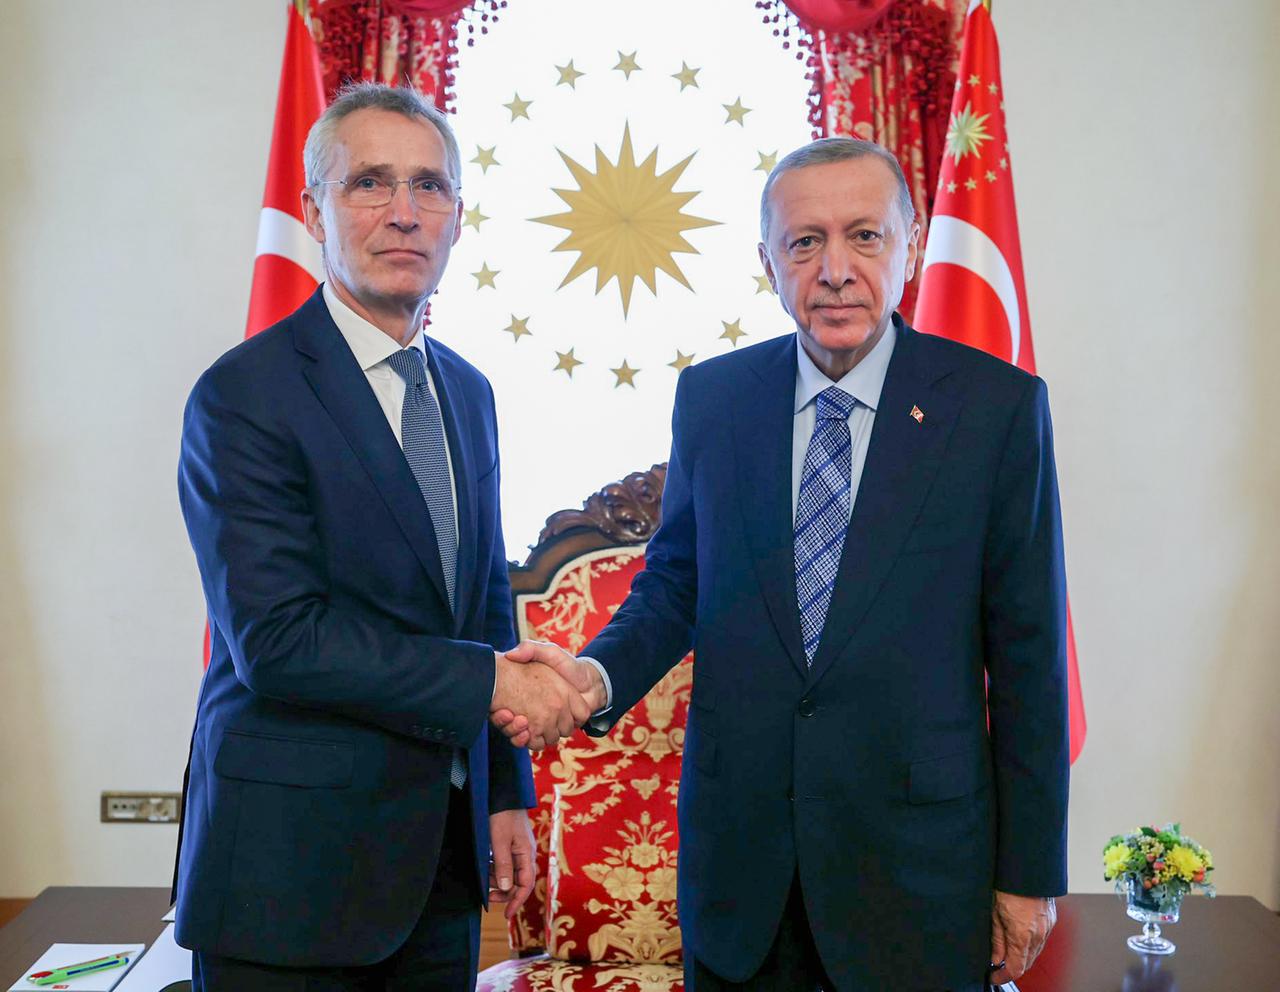 Recep Tayyip Erdogan, Präsident der Türkei, und NATO-Generalsekretär Jens Stoltenberg geben sich die Hand und blicken in die Kamera.